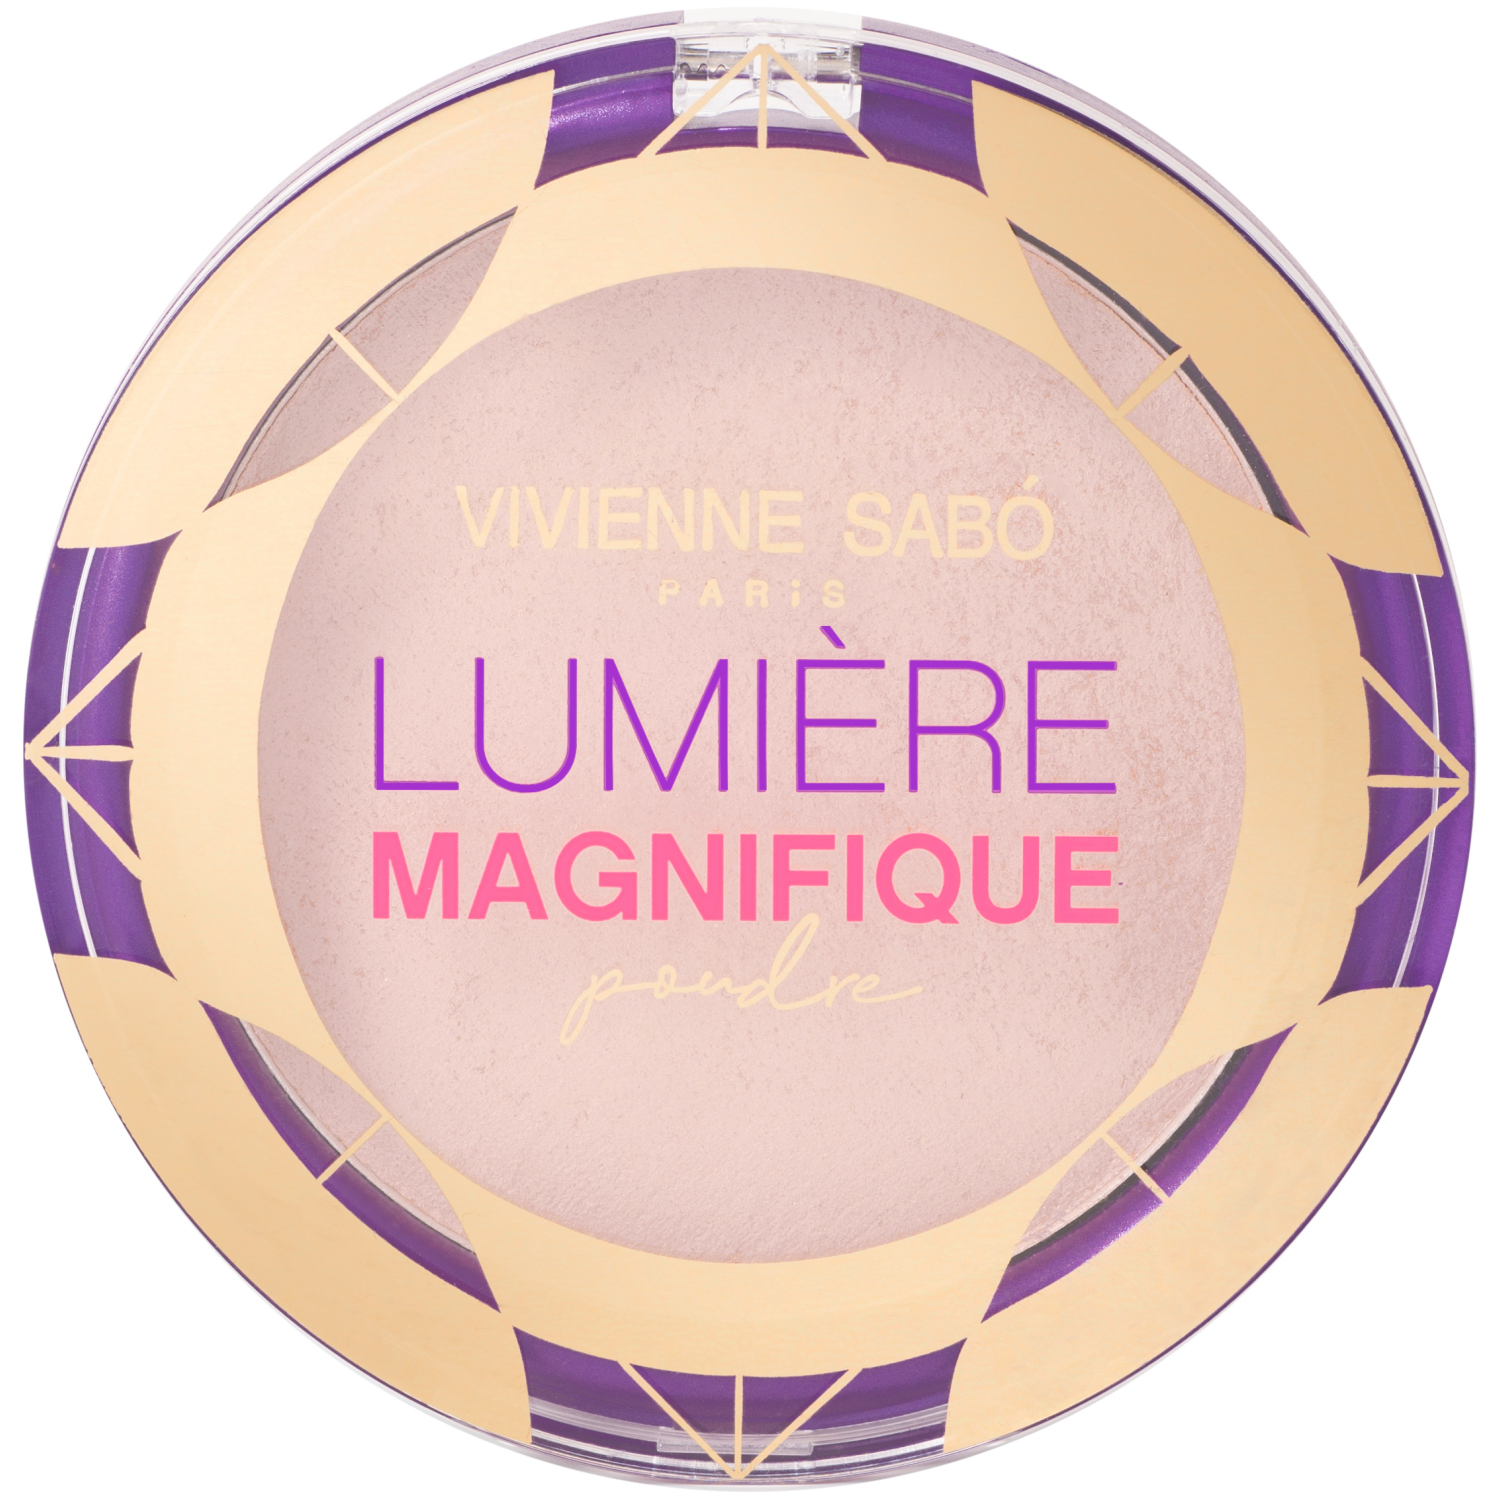 Пудра Vivienne Sabo Lumiere Magnifique, сияющая, бархатистая текстура, эффект мягкого фокуса, тон 02, бежевый, 6гр. кисть косметическая 1 для тональной основы синтетический ворс